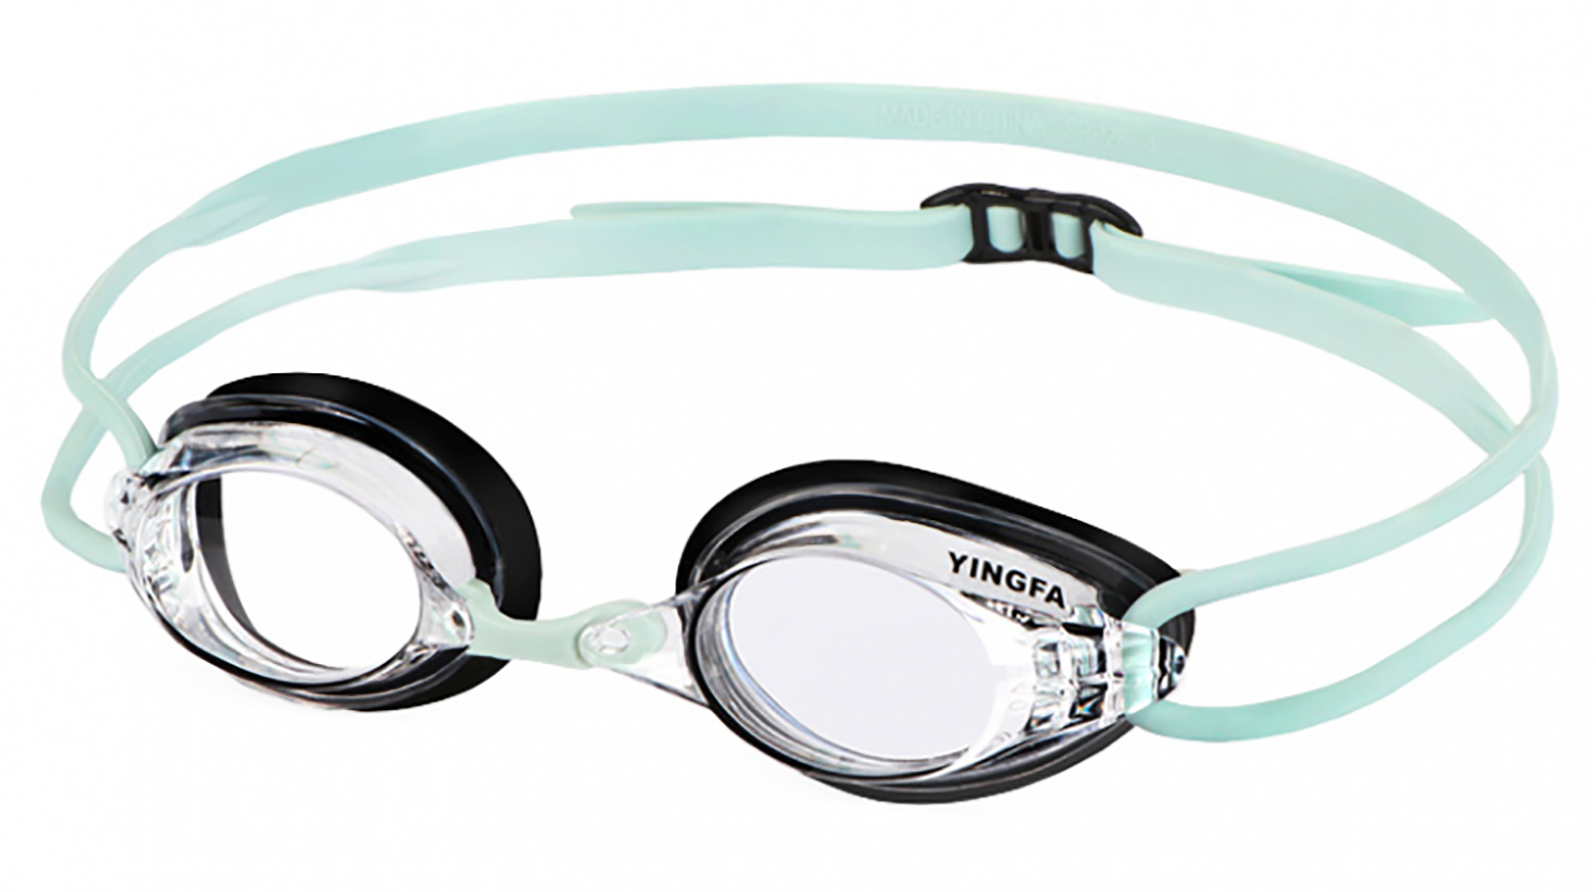 Очки для плавания Yingfa Optical Goggle Kid's -3.0 (черный) очки для чтения c солнцезащитными линзами eyelevel manhattan sun reader 3 0